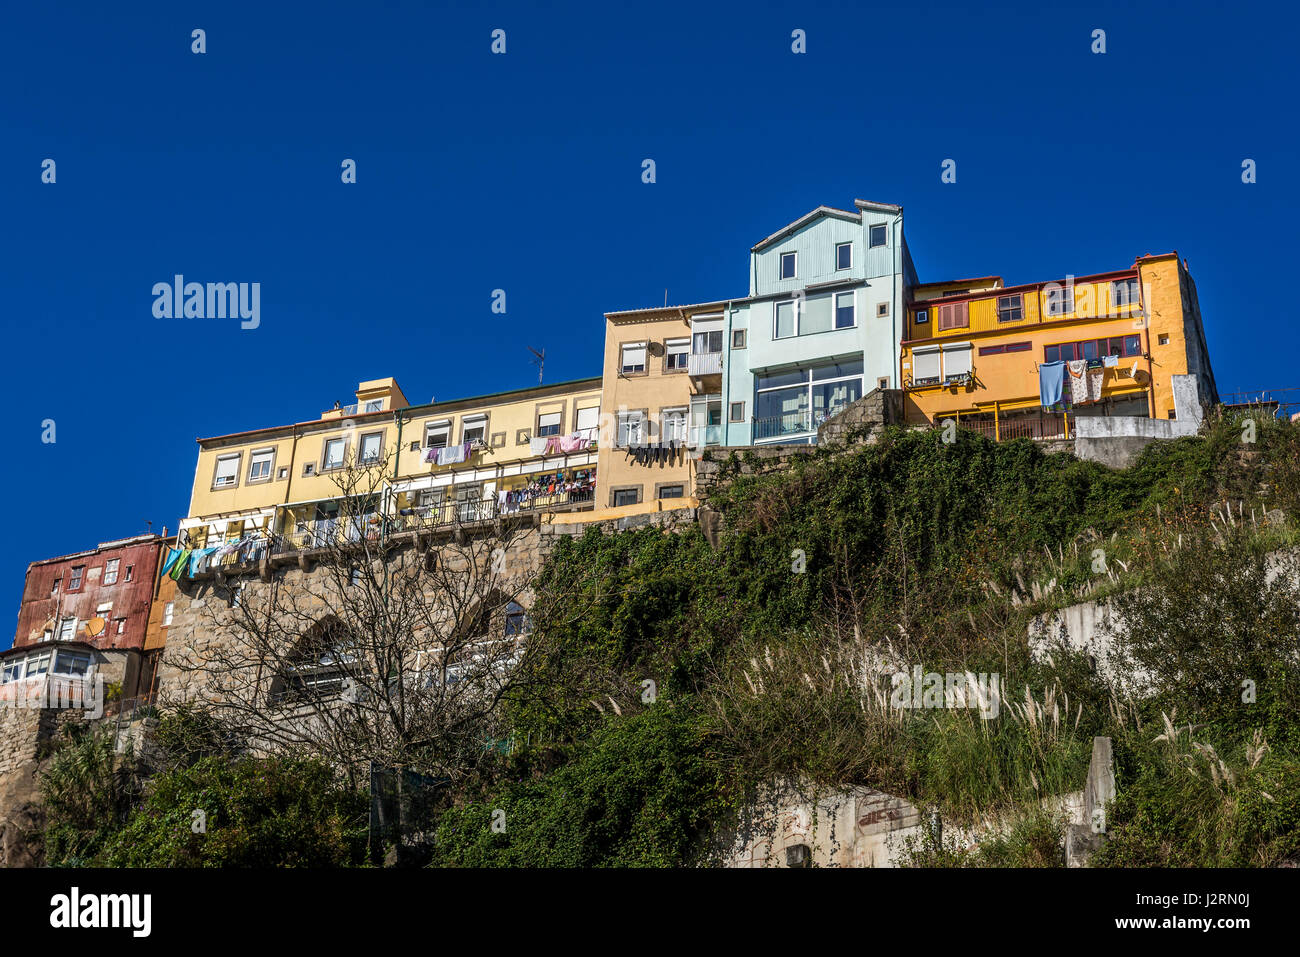 Case di città su Miradouro Street nella città di Porto sulla Penisola Iberica, la seconda più grande città in Portogallo Foto Stock